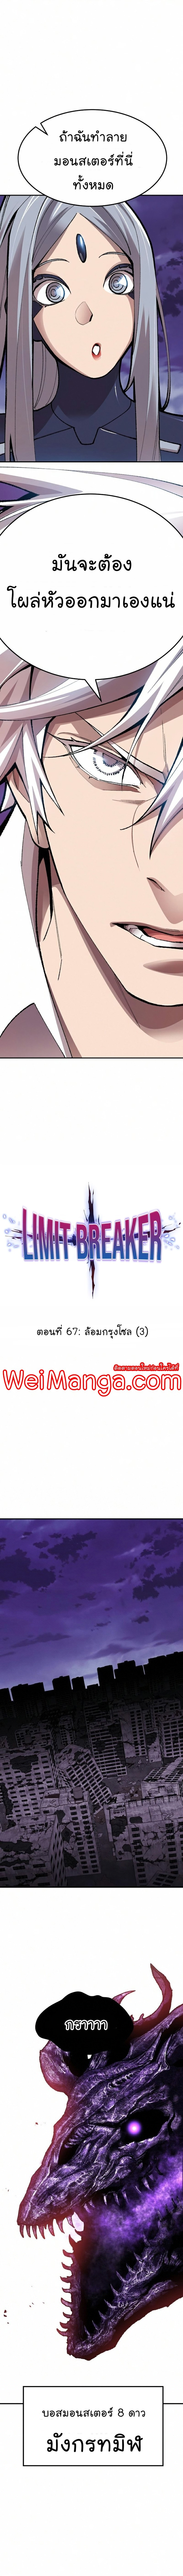 Limit Breaker 67 04